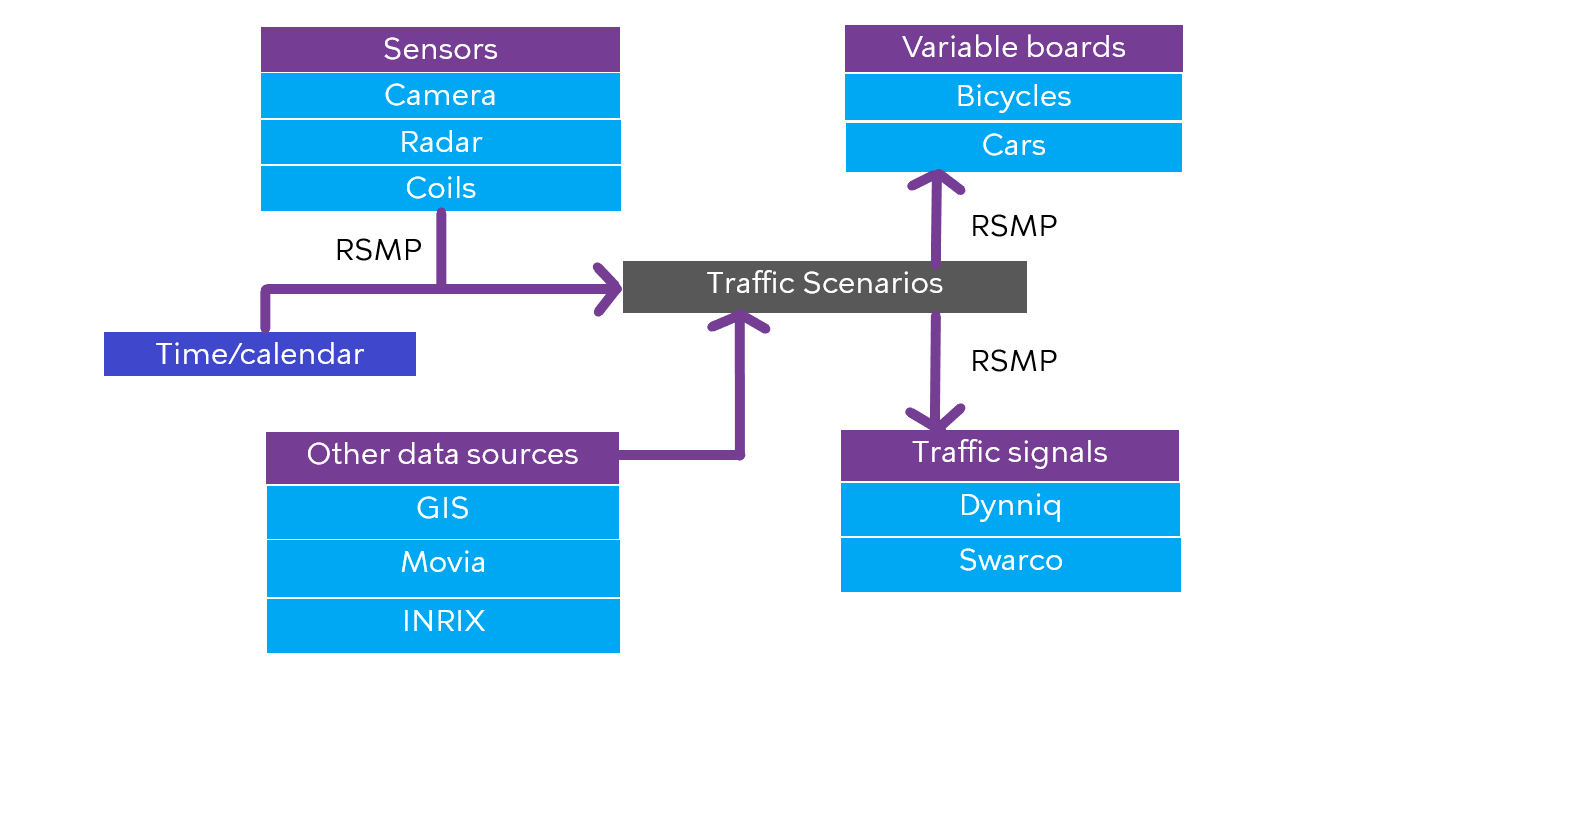 RSMP scenario management